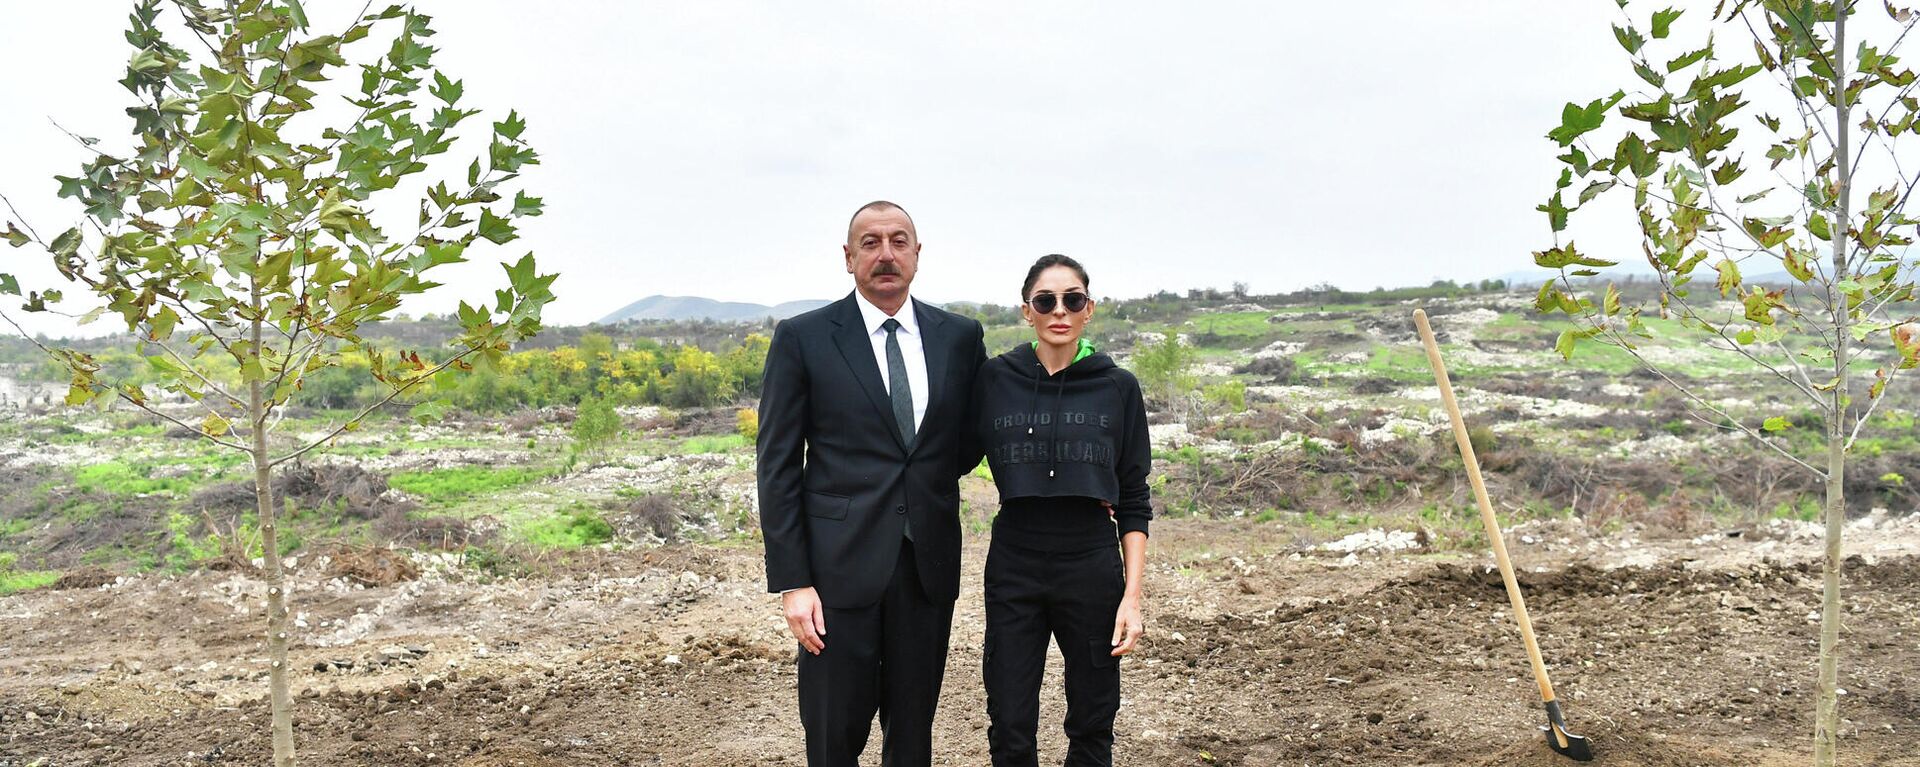 Президент Ильхам Алиев и Первая леди Мехрибан Алиева совершили поездку в Физулинский район - Sputnik Азербайджан, 1920, 18.10.2021